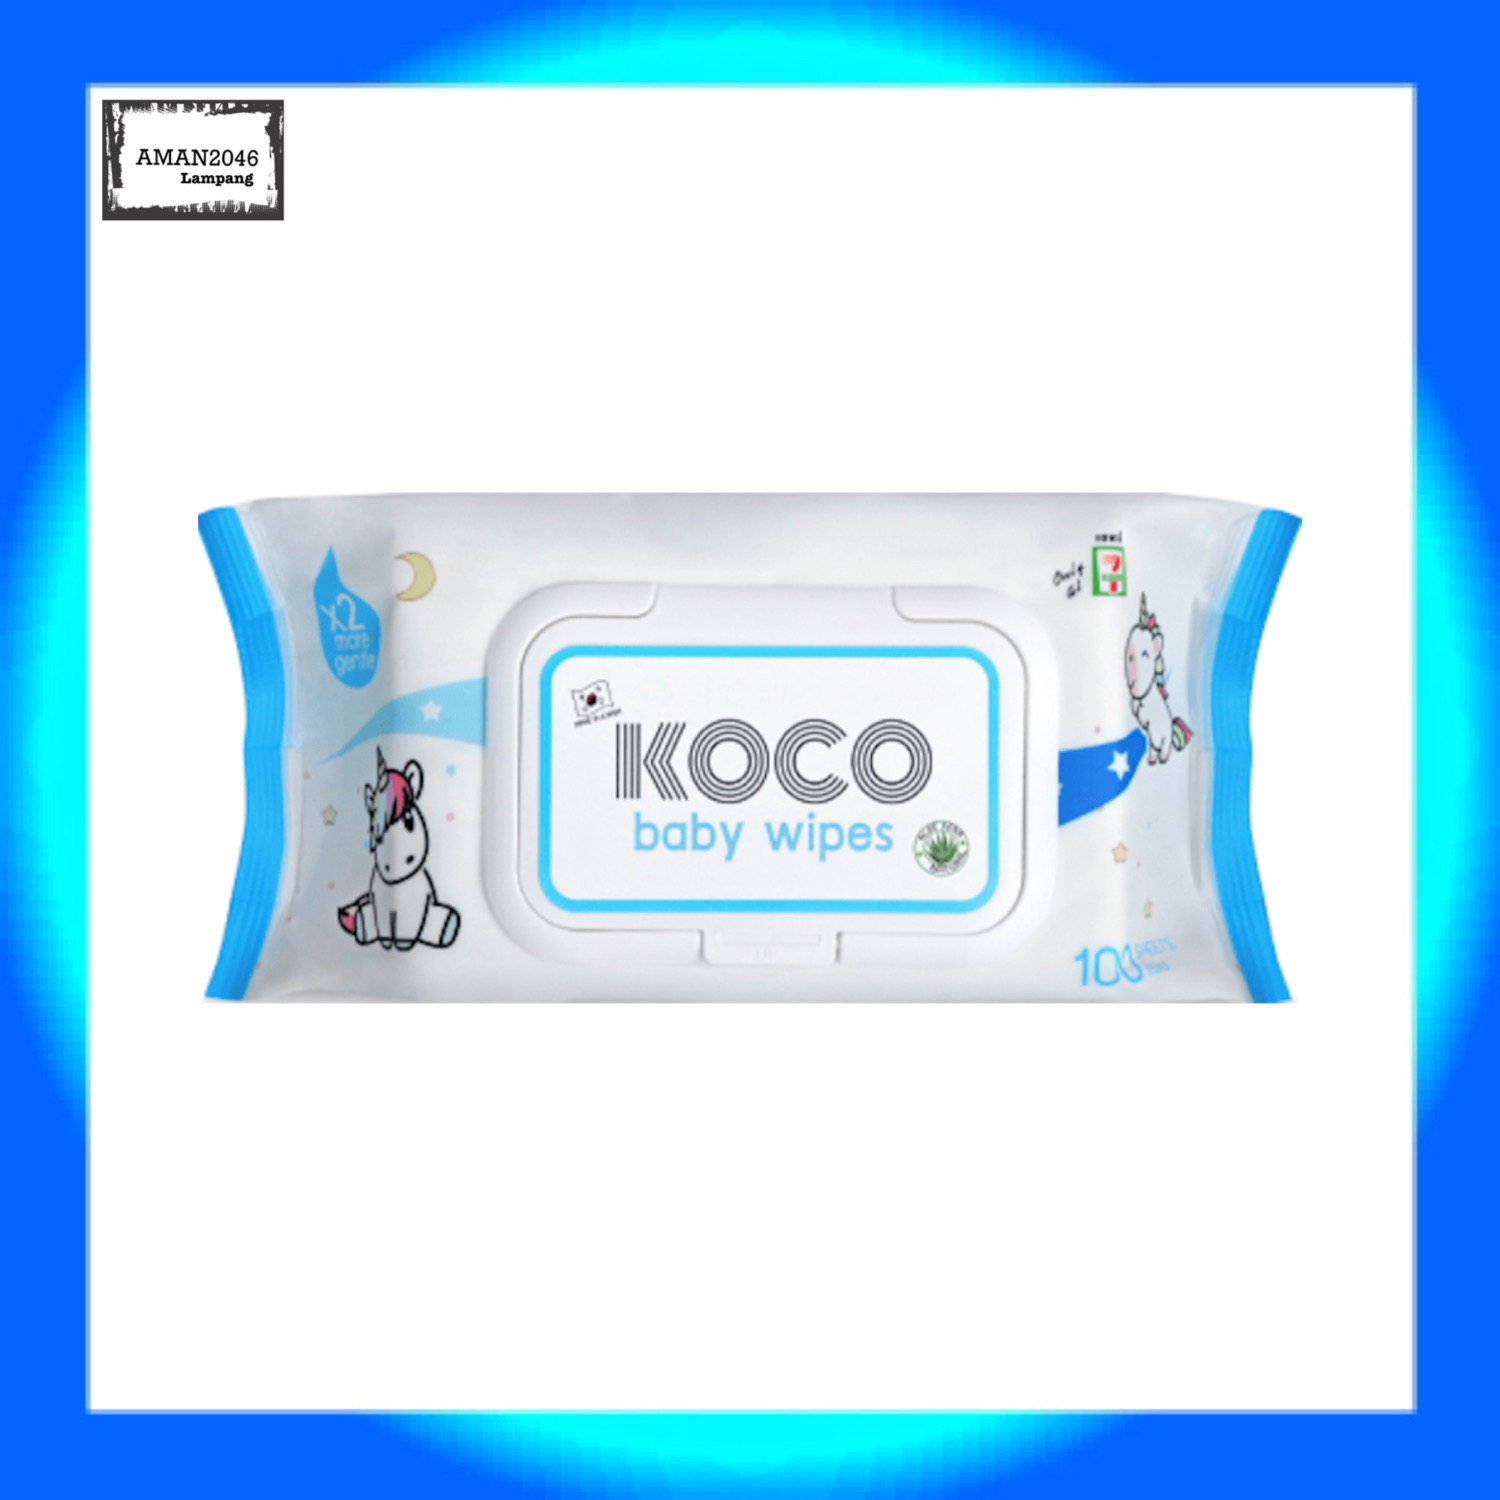 โคโค่ ผ้าเปียก Koco Baby Wibes ทิชชู่เปียก สูตรอ่อนโยน 2 เท่า  นำเข้าจากประเทศเกาหลี  ปริมาณ 100 แผ่น จำนวน 1 แพ๊ค  สูตร สูตรอ่อนโยน